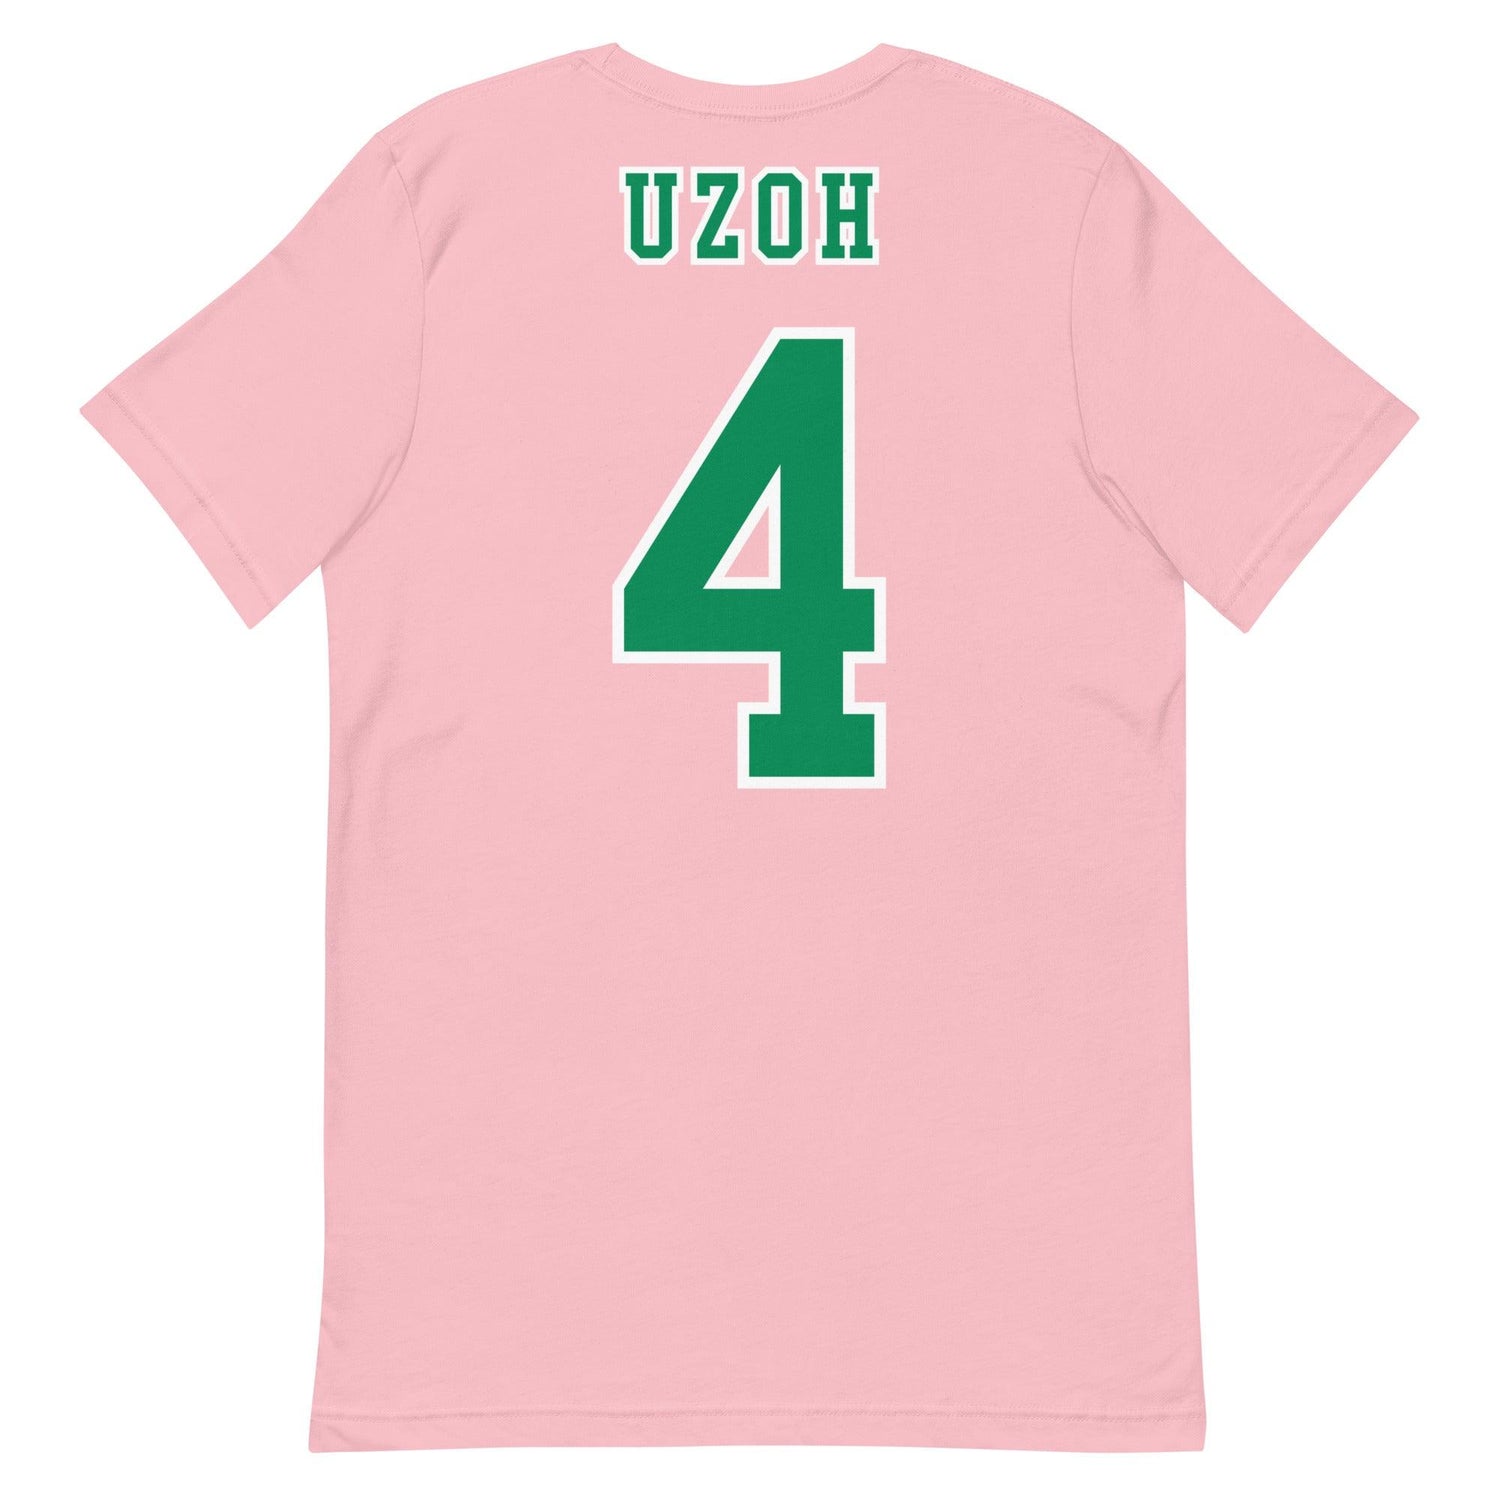 Ben Uzoh "Jersey" t-shirt - Fan Arch